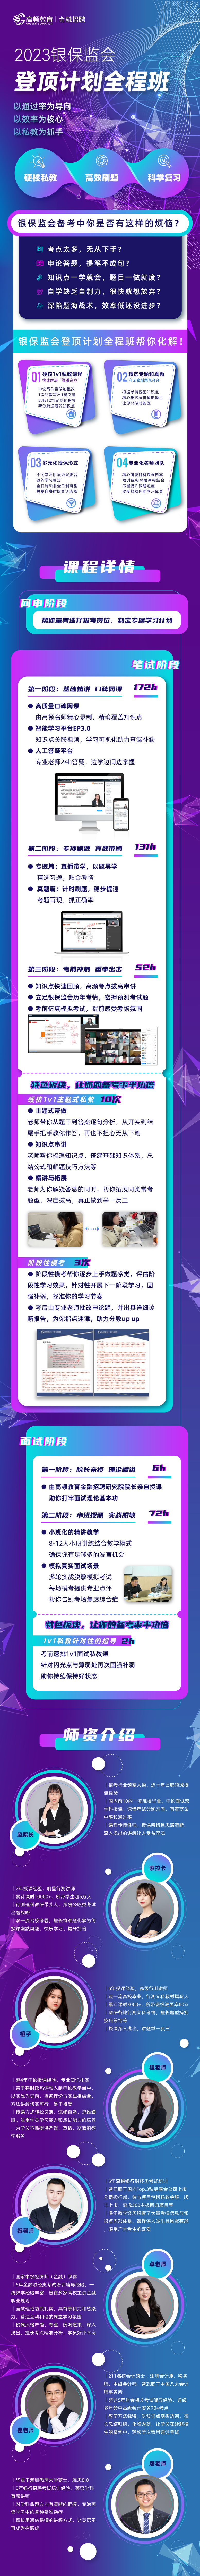 https://simg01.gaodunwangxiao.com/uploadfiles/product-center/202209/08/45251_20220908132512.png